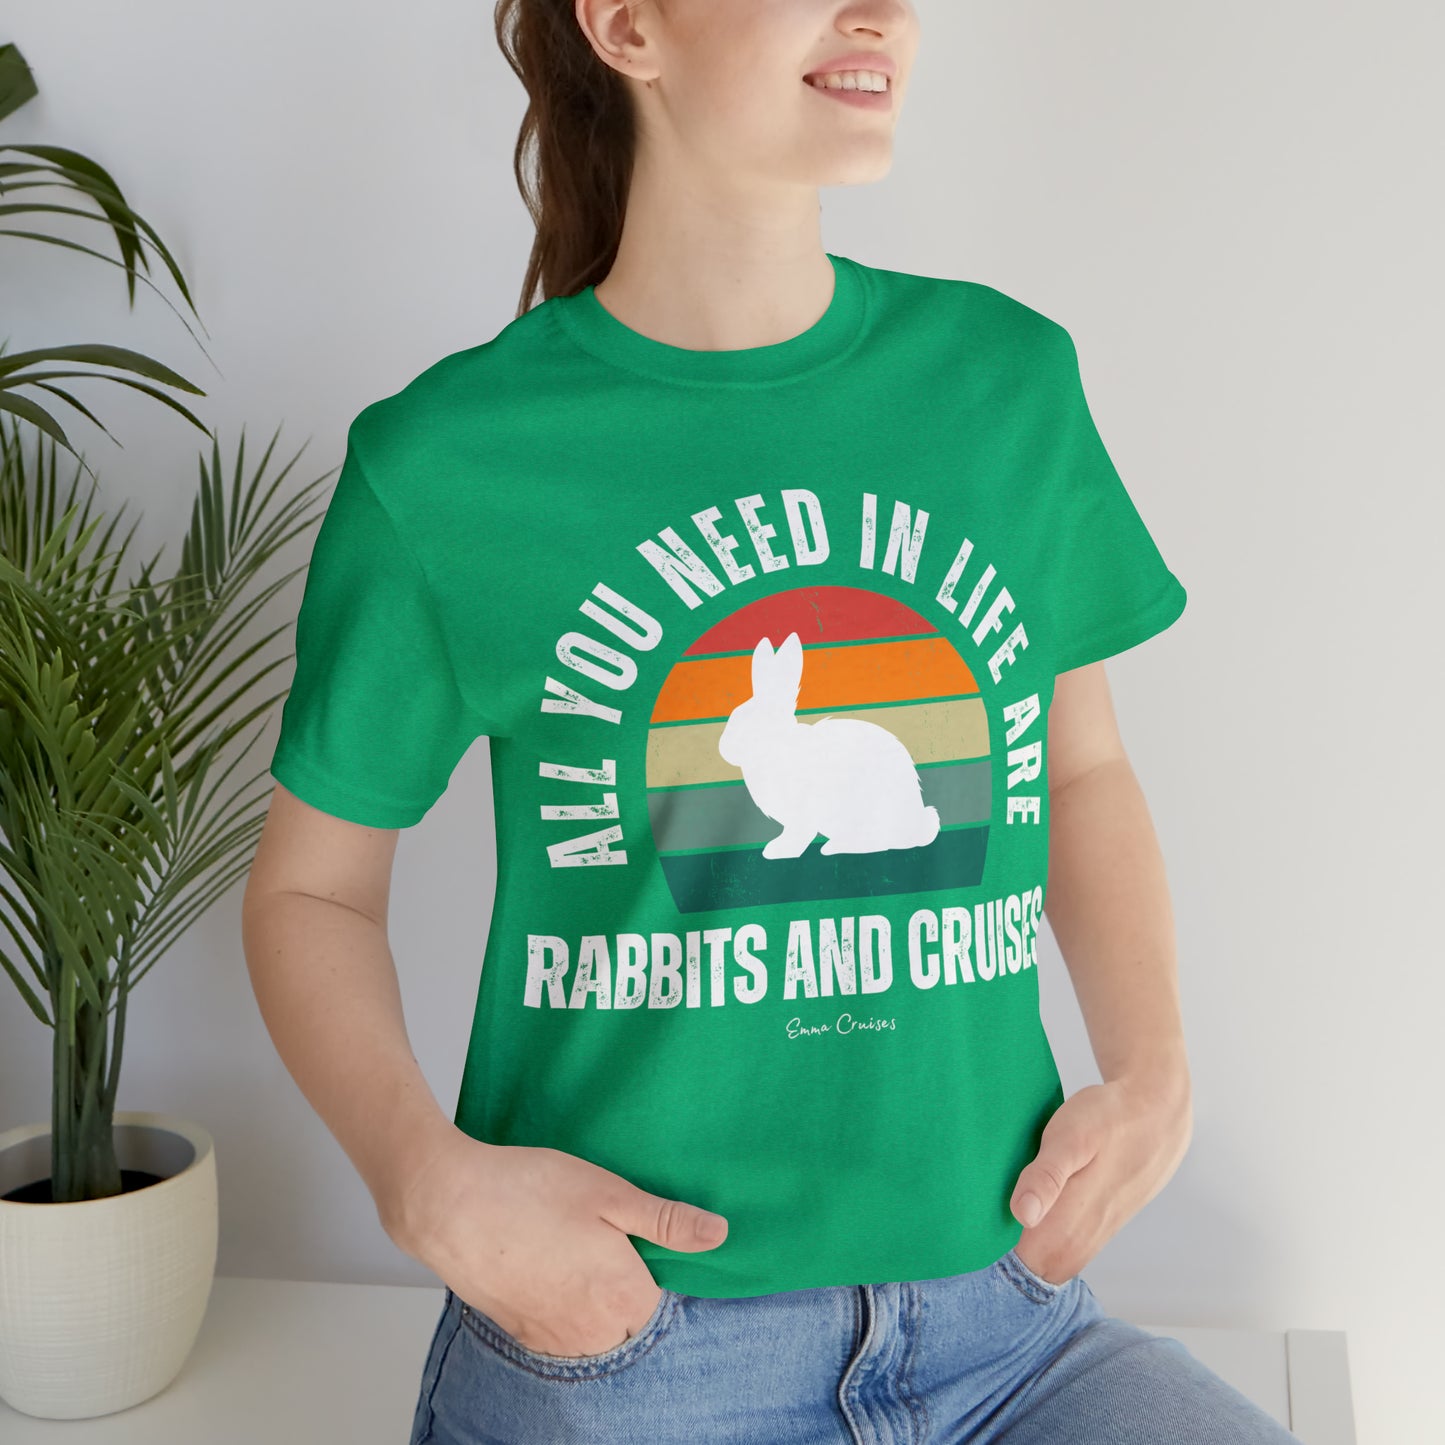 Rabbits and Cruises - UNISEX T-Shirt